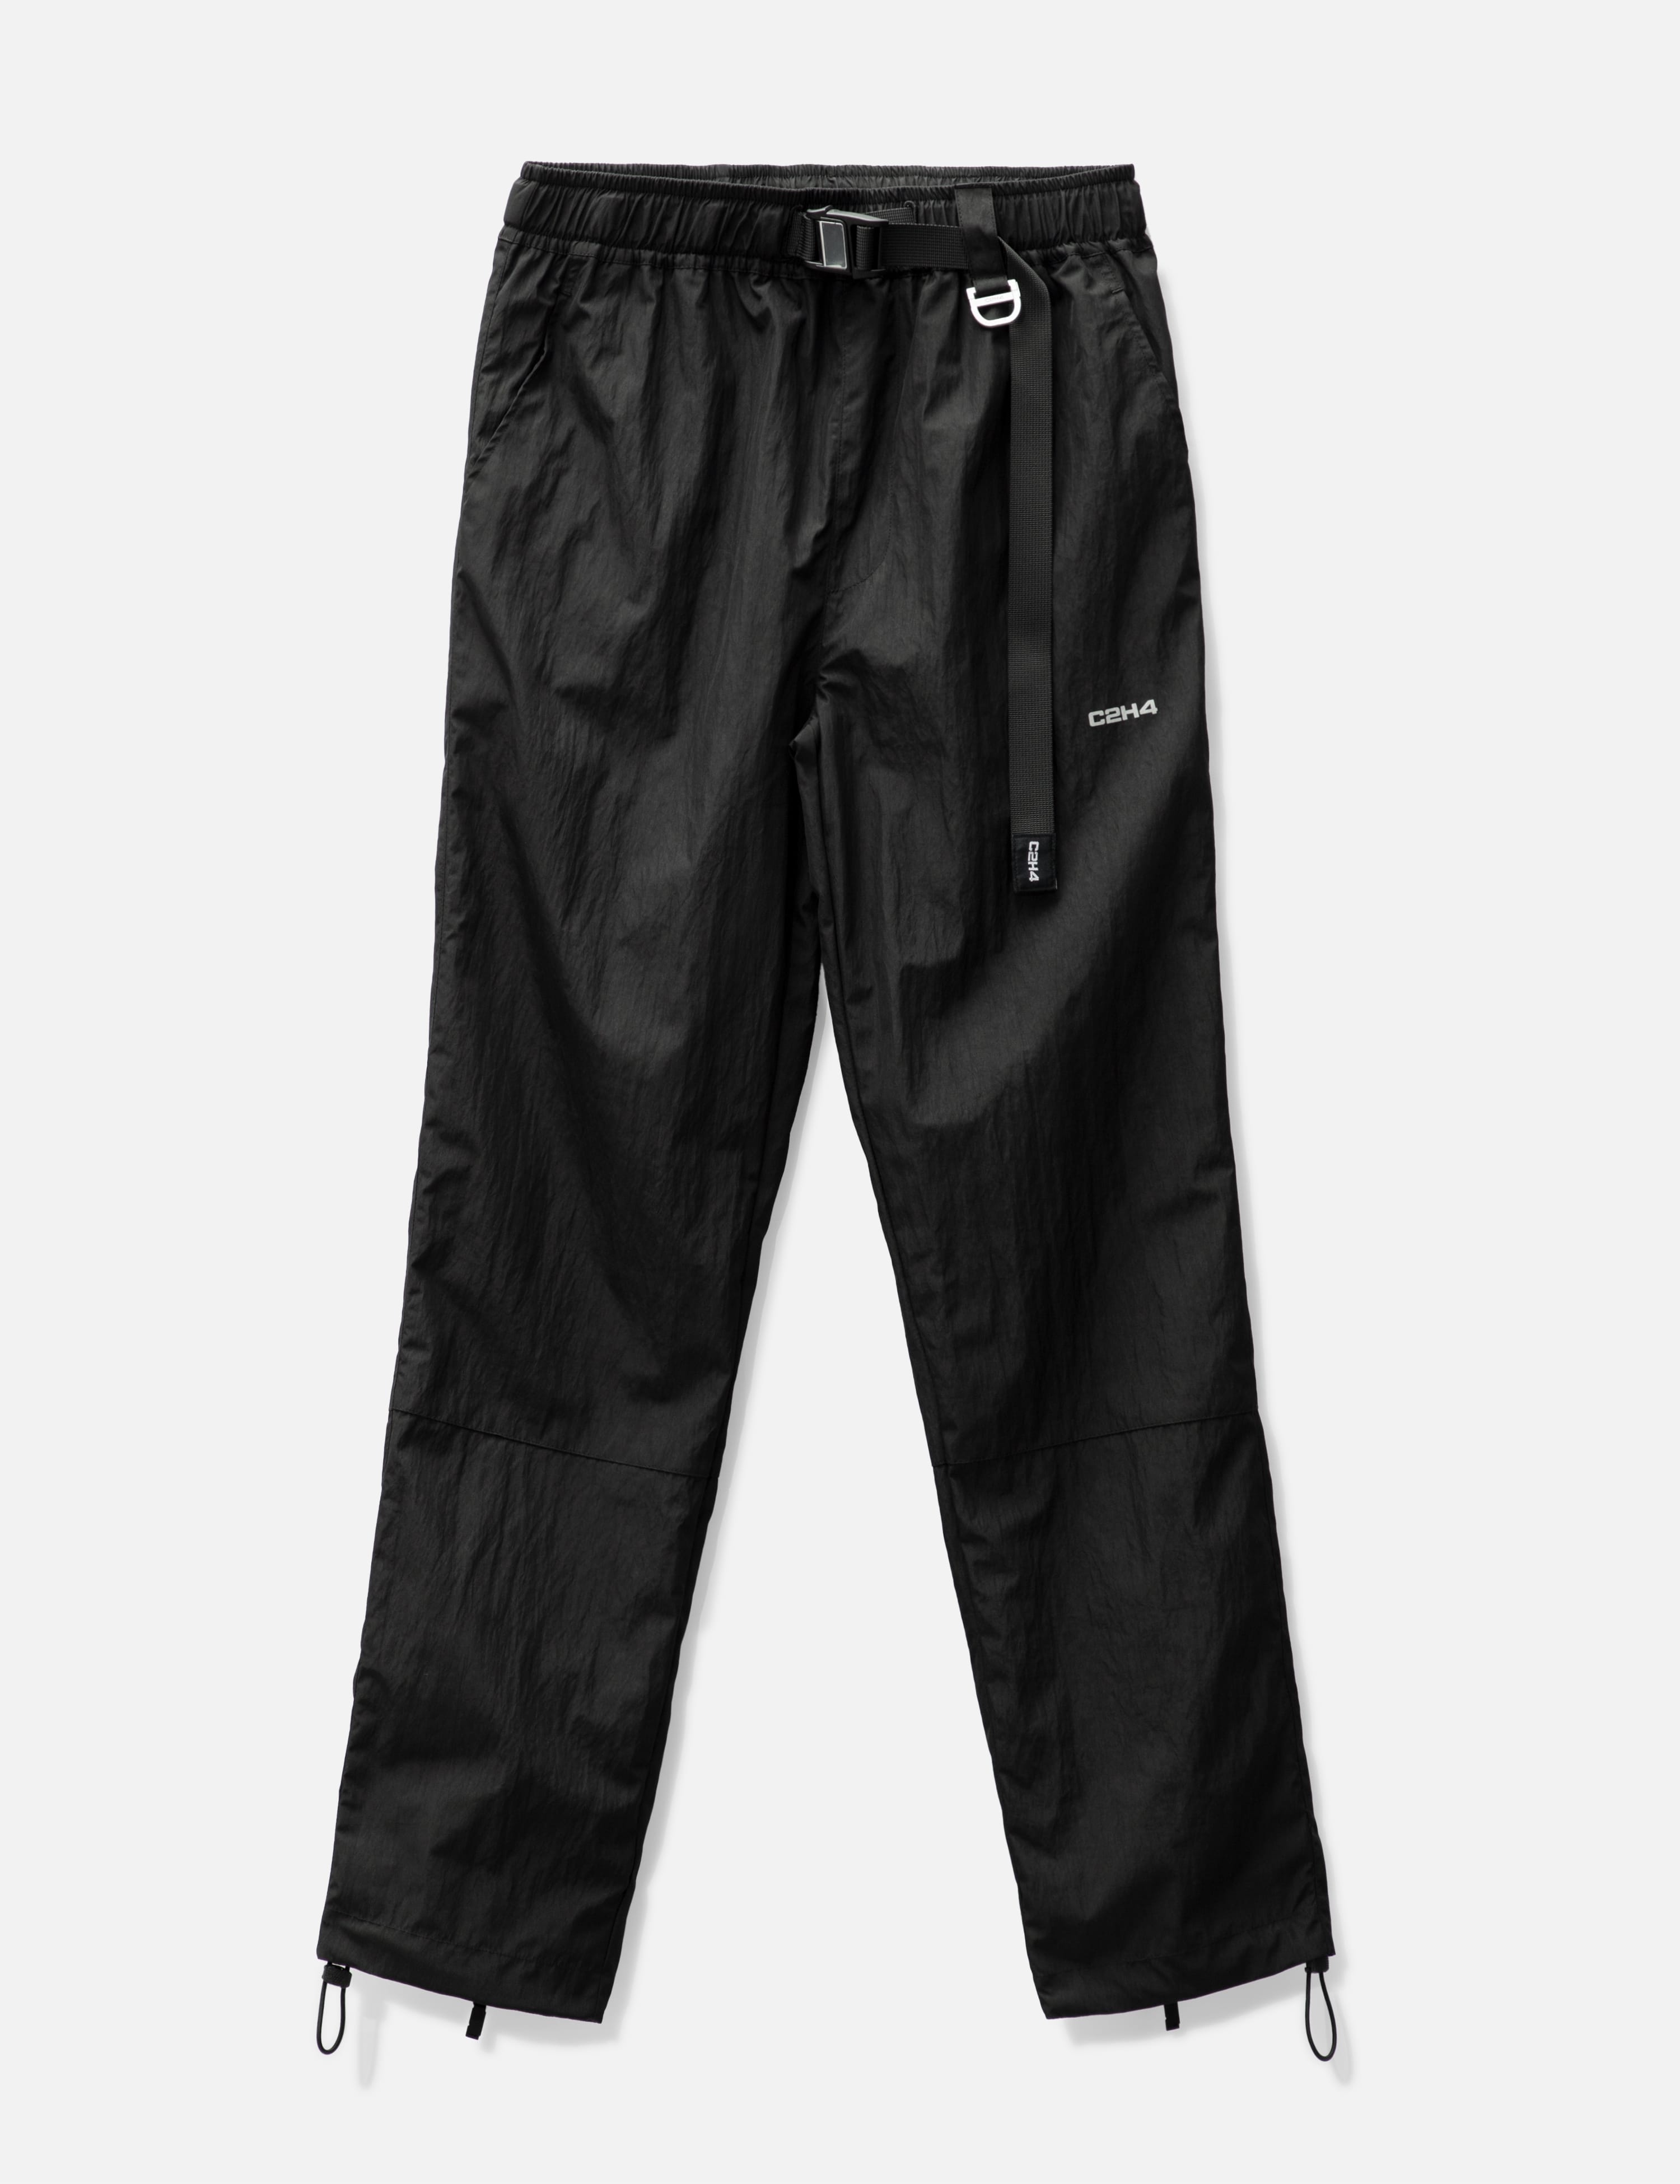 Vanheusen Men's Quick Dry Active Track Pant (Navy) Style# 51041 – BODYBASICS